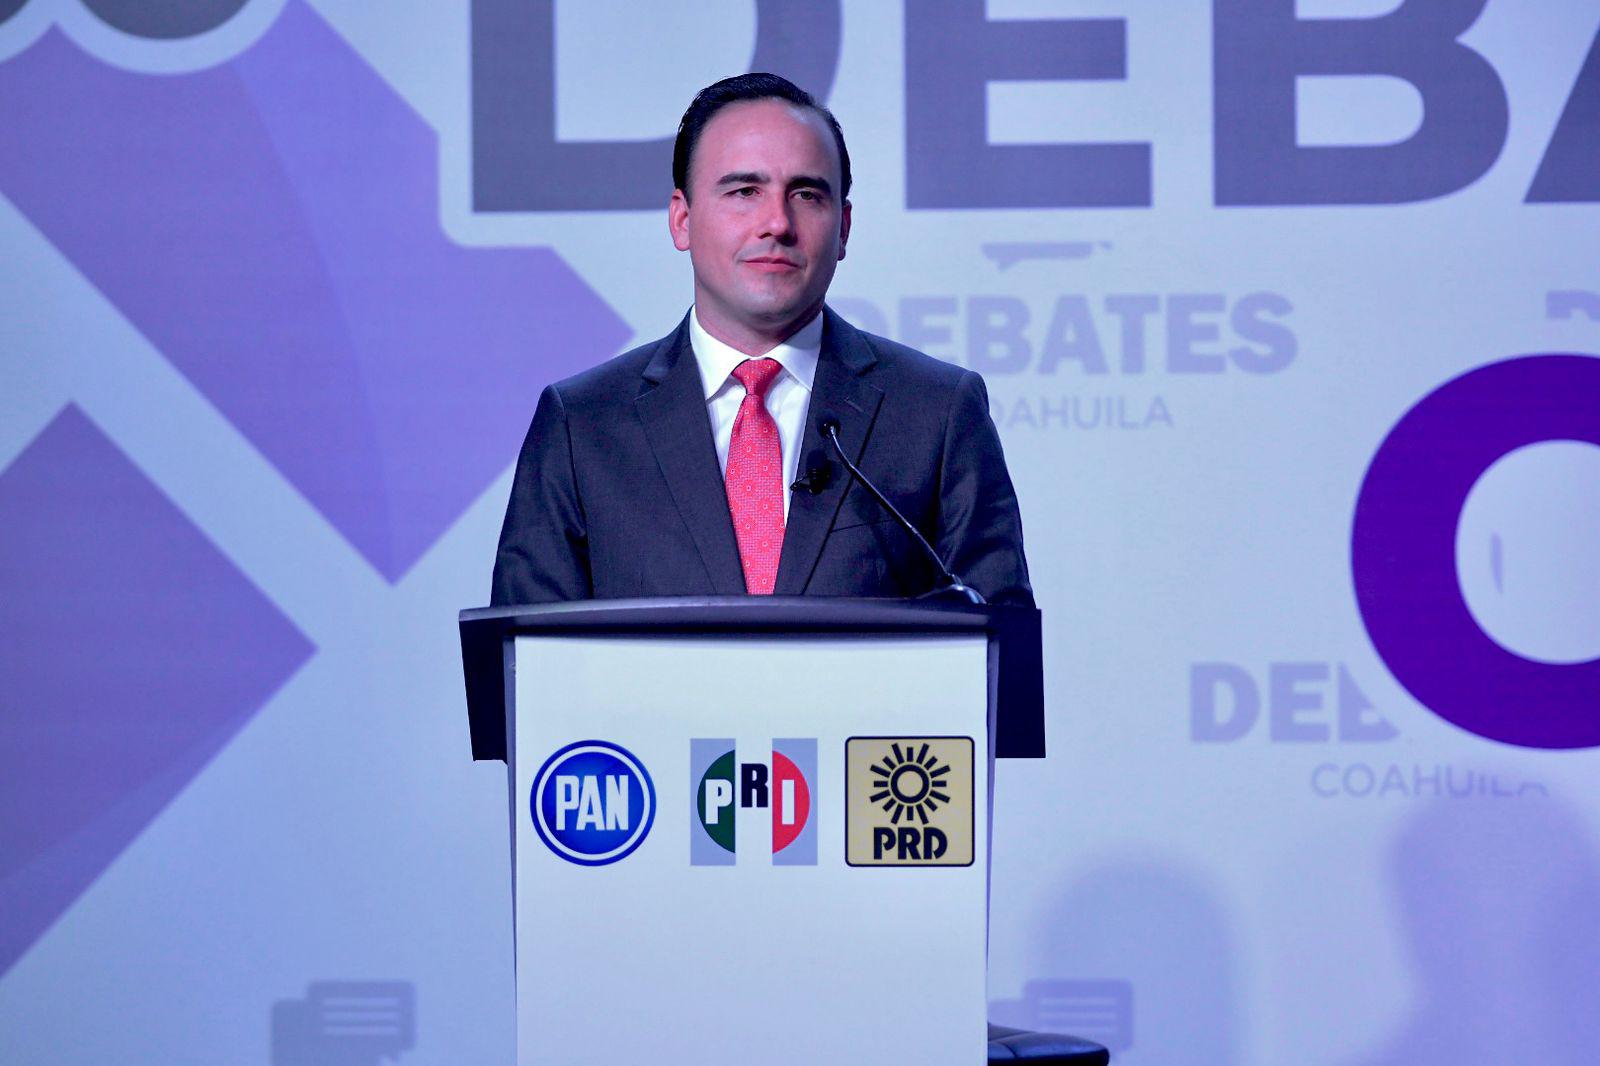 $!El abanderado de la coalición PRI-PAN-PRD, Manolo Jiménez, retomó su propuesta “Coahuila sorprende al mundo”, con la cual busca llevar a la entidad a ser conocida en todo el mundo.